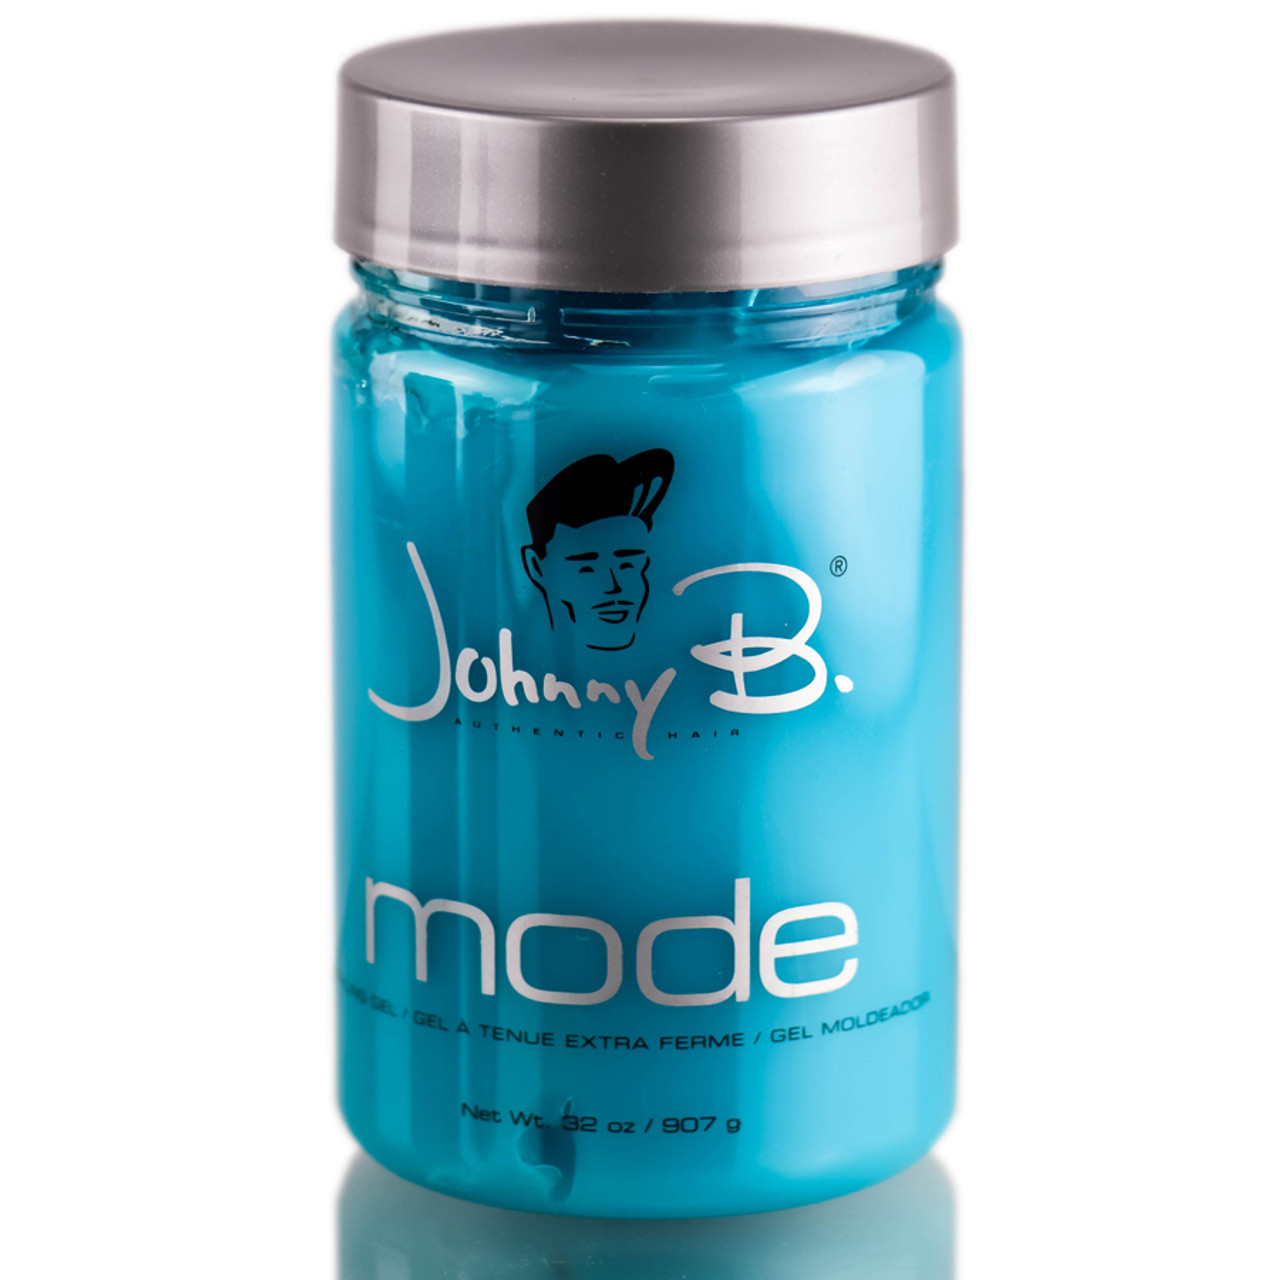 Johnny B Mode Styling Gel 8 oz - Clear Beauty Co